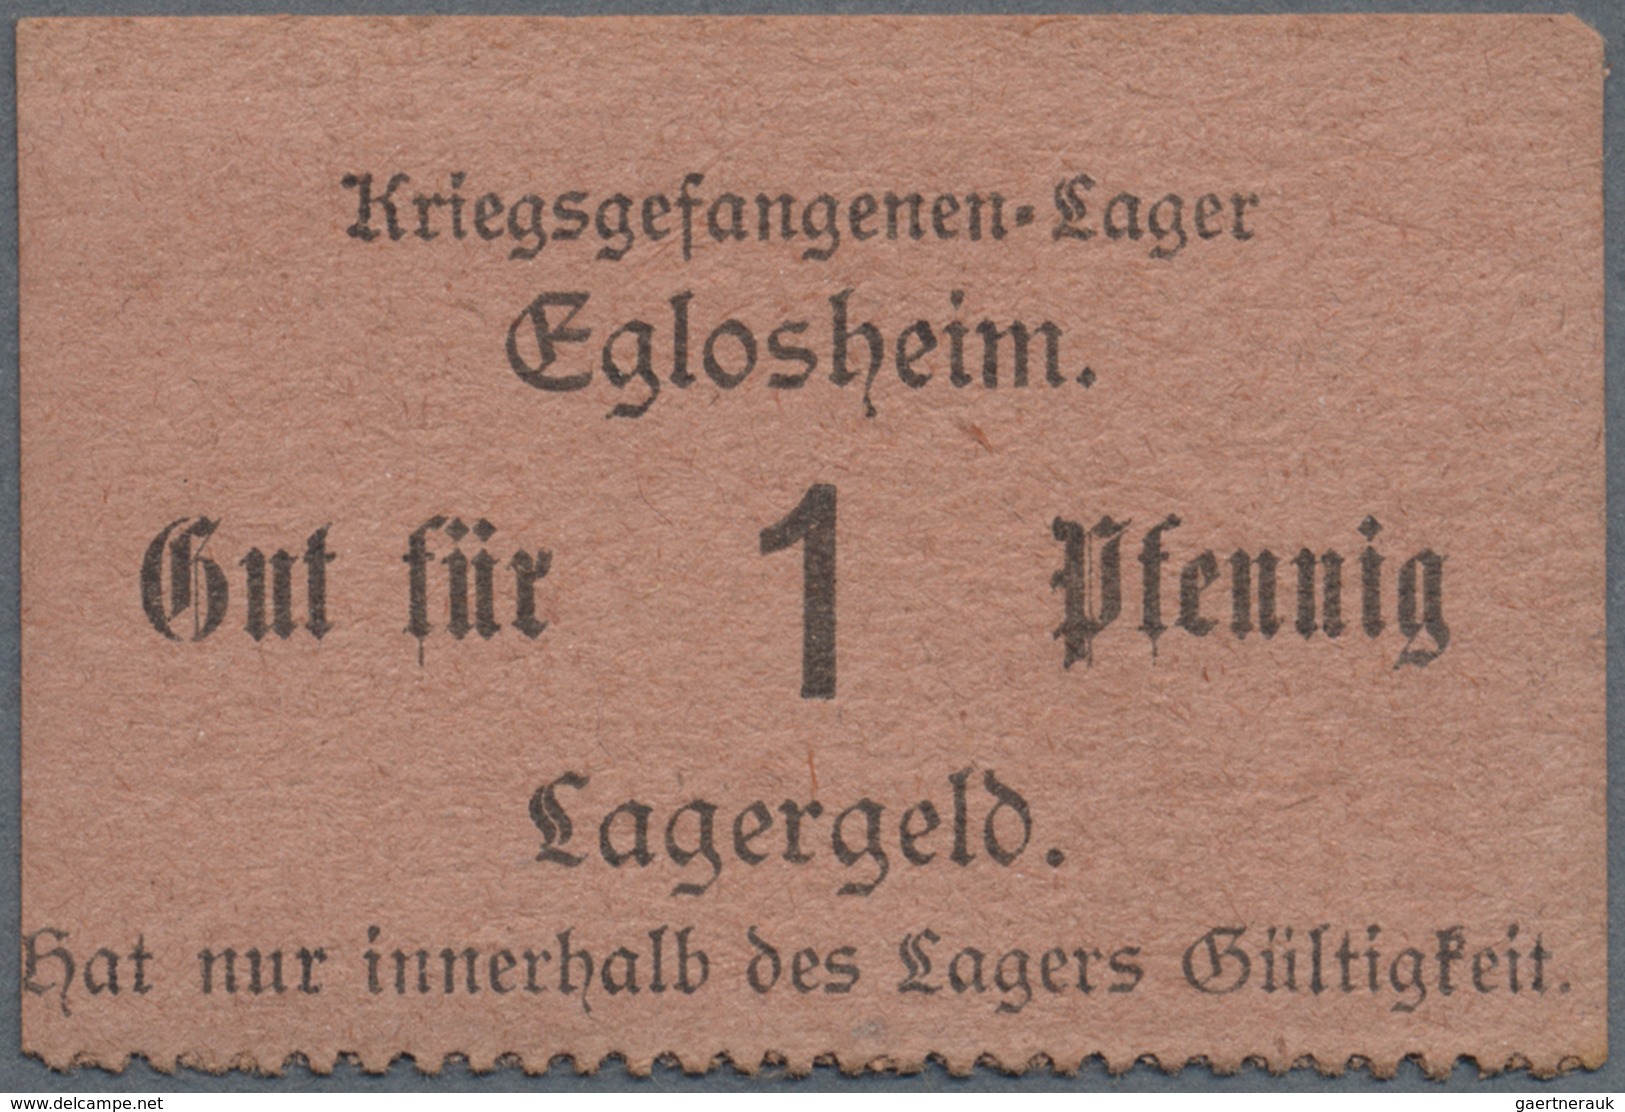 Deutschland - Konzentrations- und Kriegsgefangenenlager: Eglosheim (Württemberg), Kriegsgefangenlage